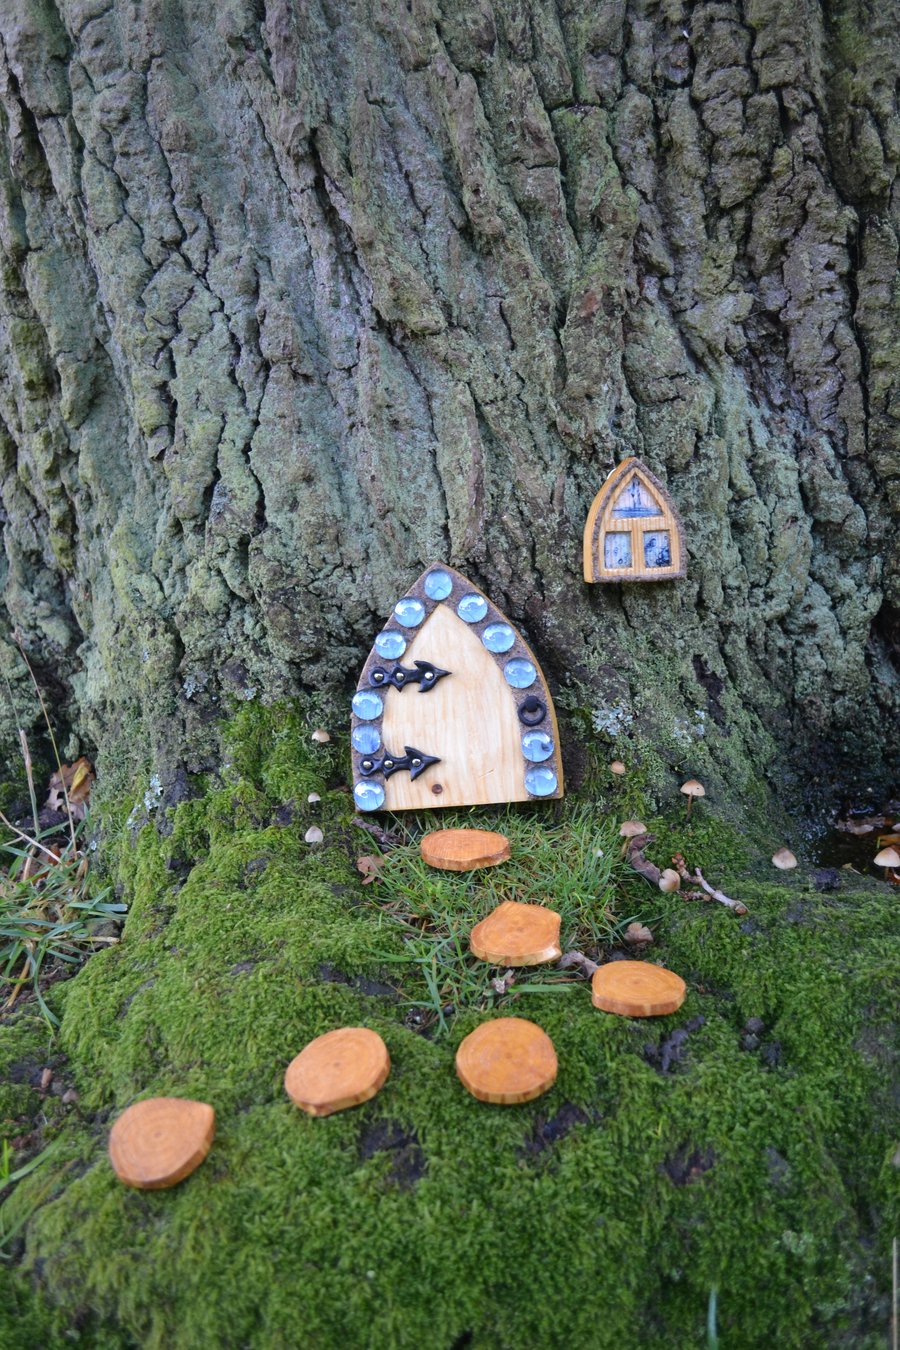 Garden Fairy, Gnome, Hobbit, Elf Forest door kit (Blue pebbles)